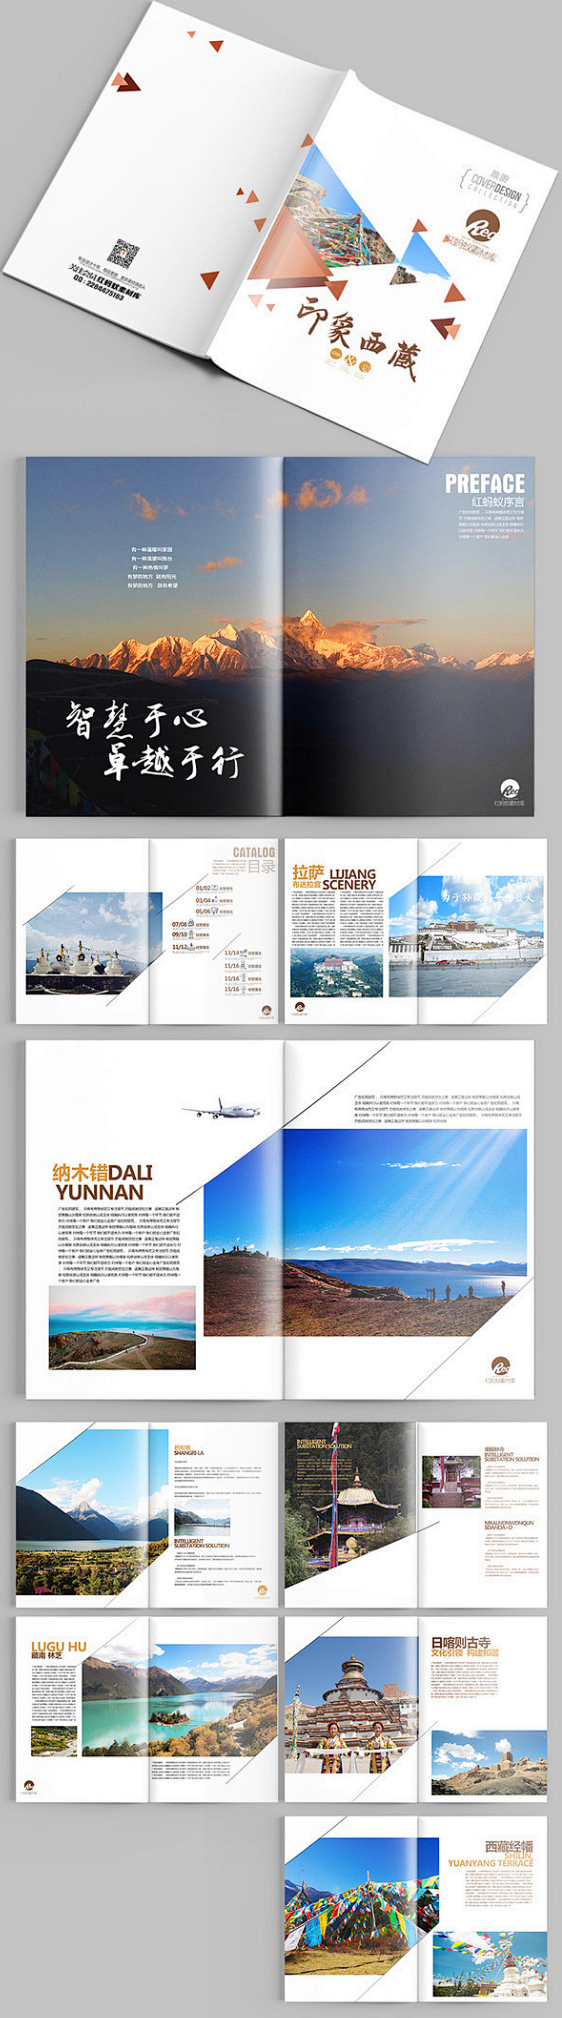 精美西藏旅游画册设计PSD素材下载_企业...